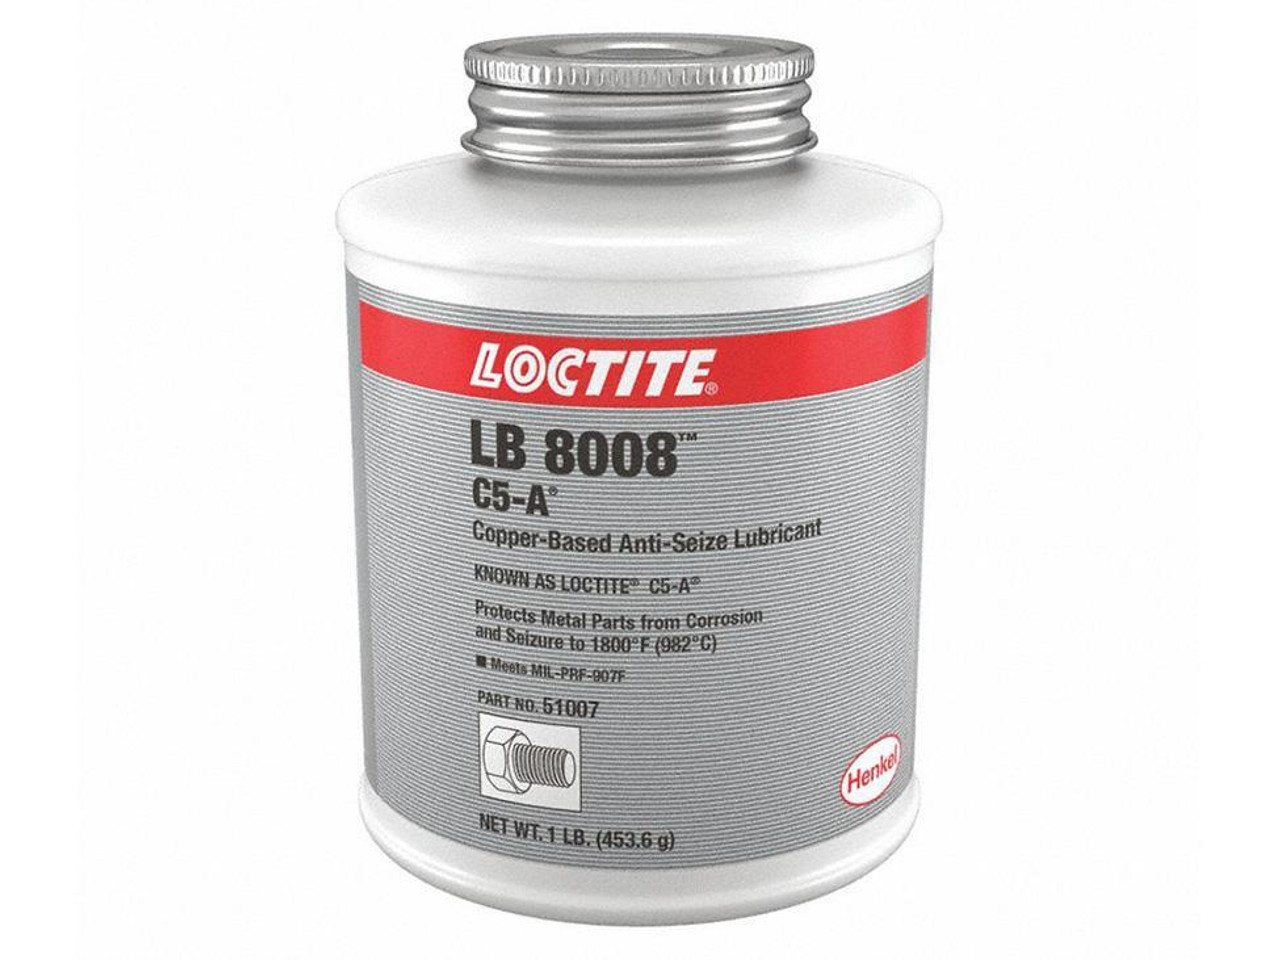 LB 8008 C5-A Copper-Based Anti-Seize Lubricant 1lb. Can  160796